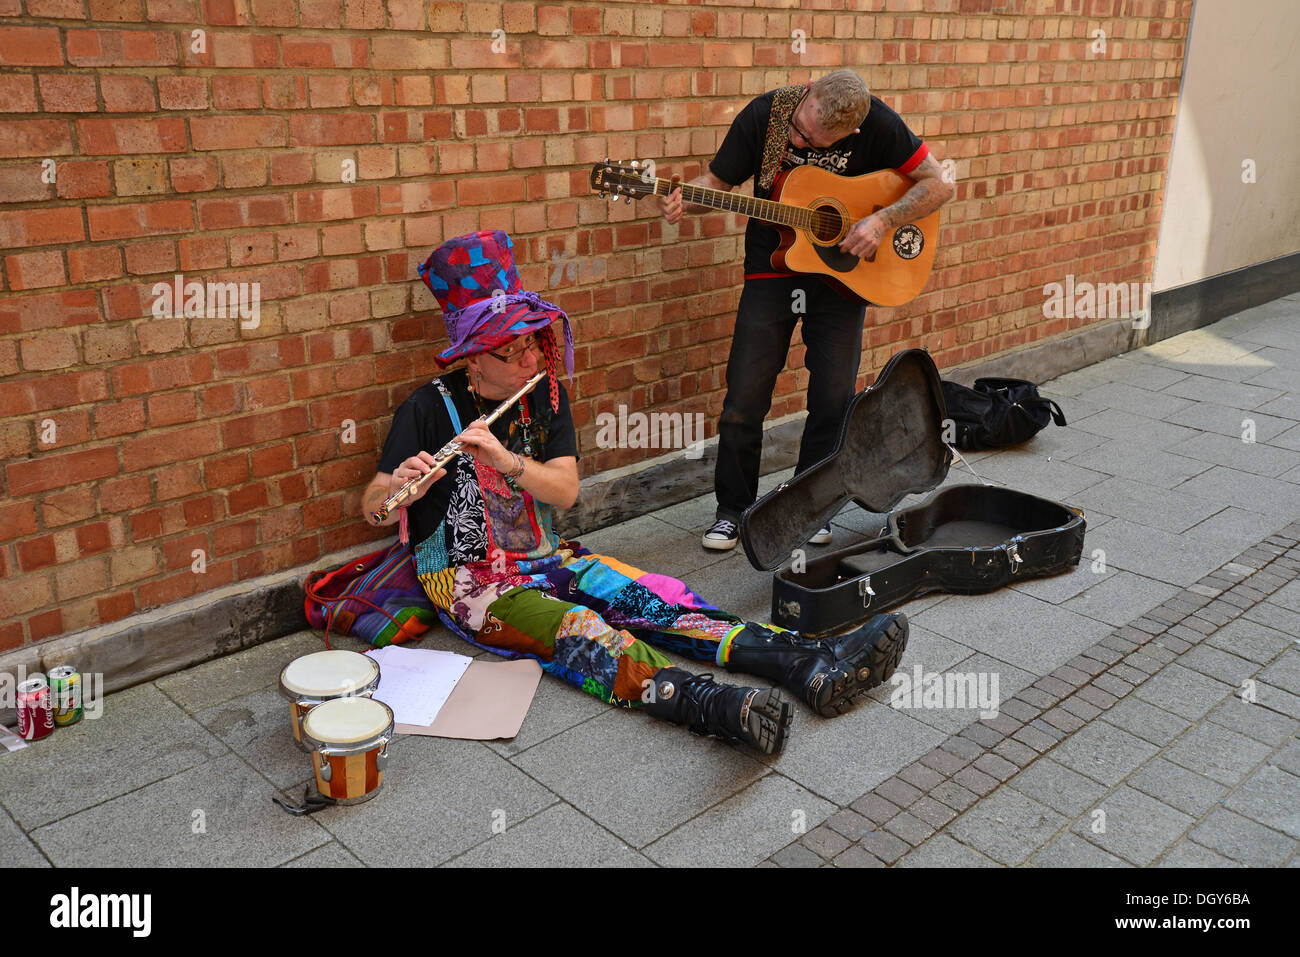 Les amuseurs publics au centre ville, Boston, Lincolnshire, Angleterre, Royaume-Uni Banque D'Images